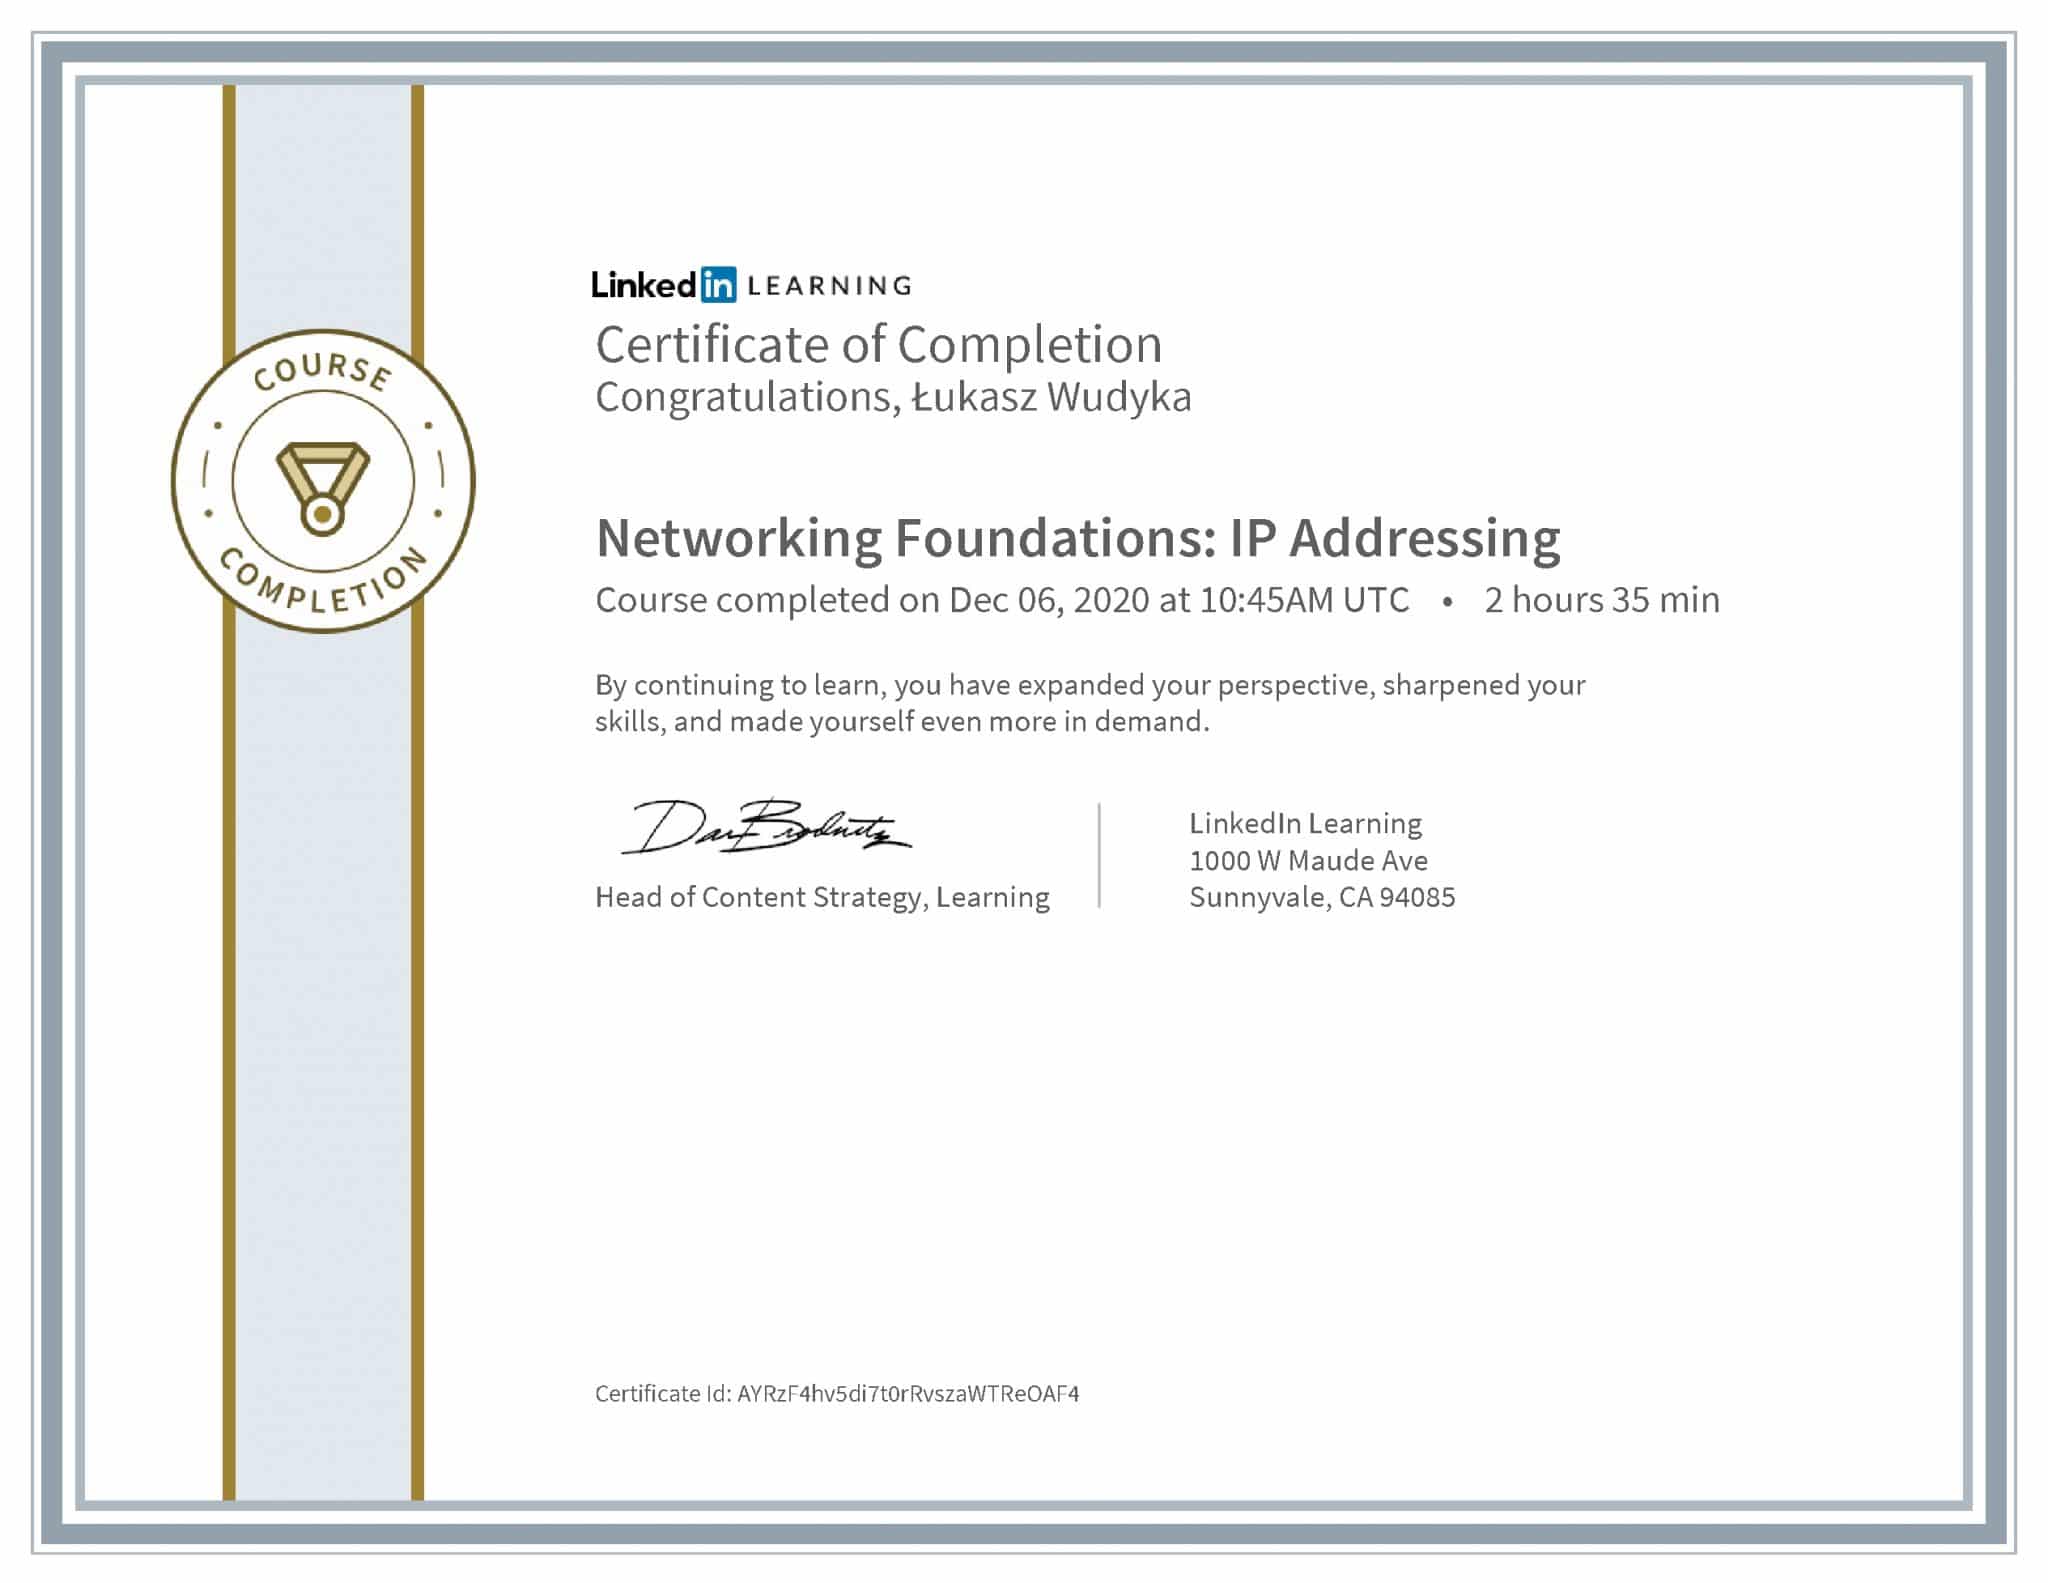 Łukasz Wudyka certyfikat LinkedIn Networking Foundations: IP Addressing